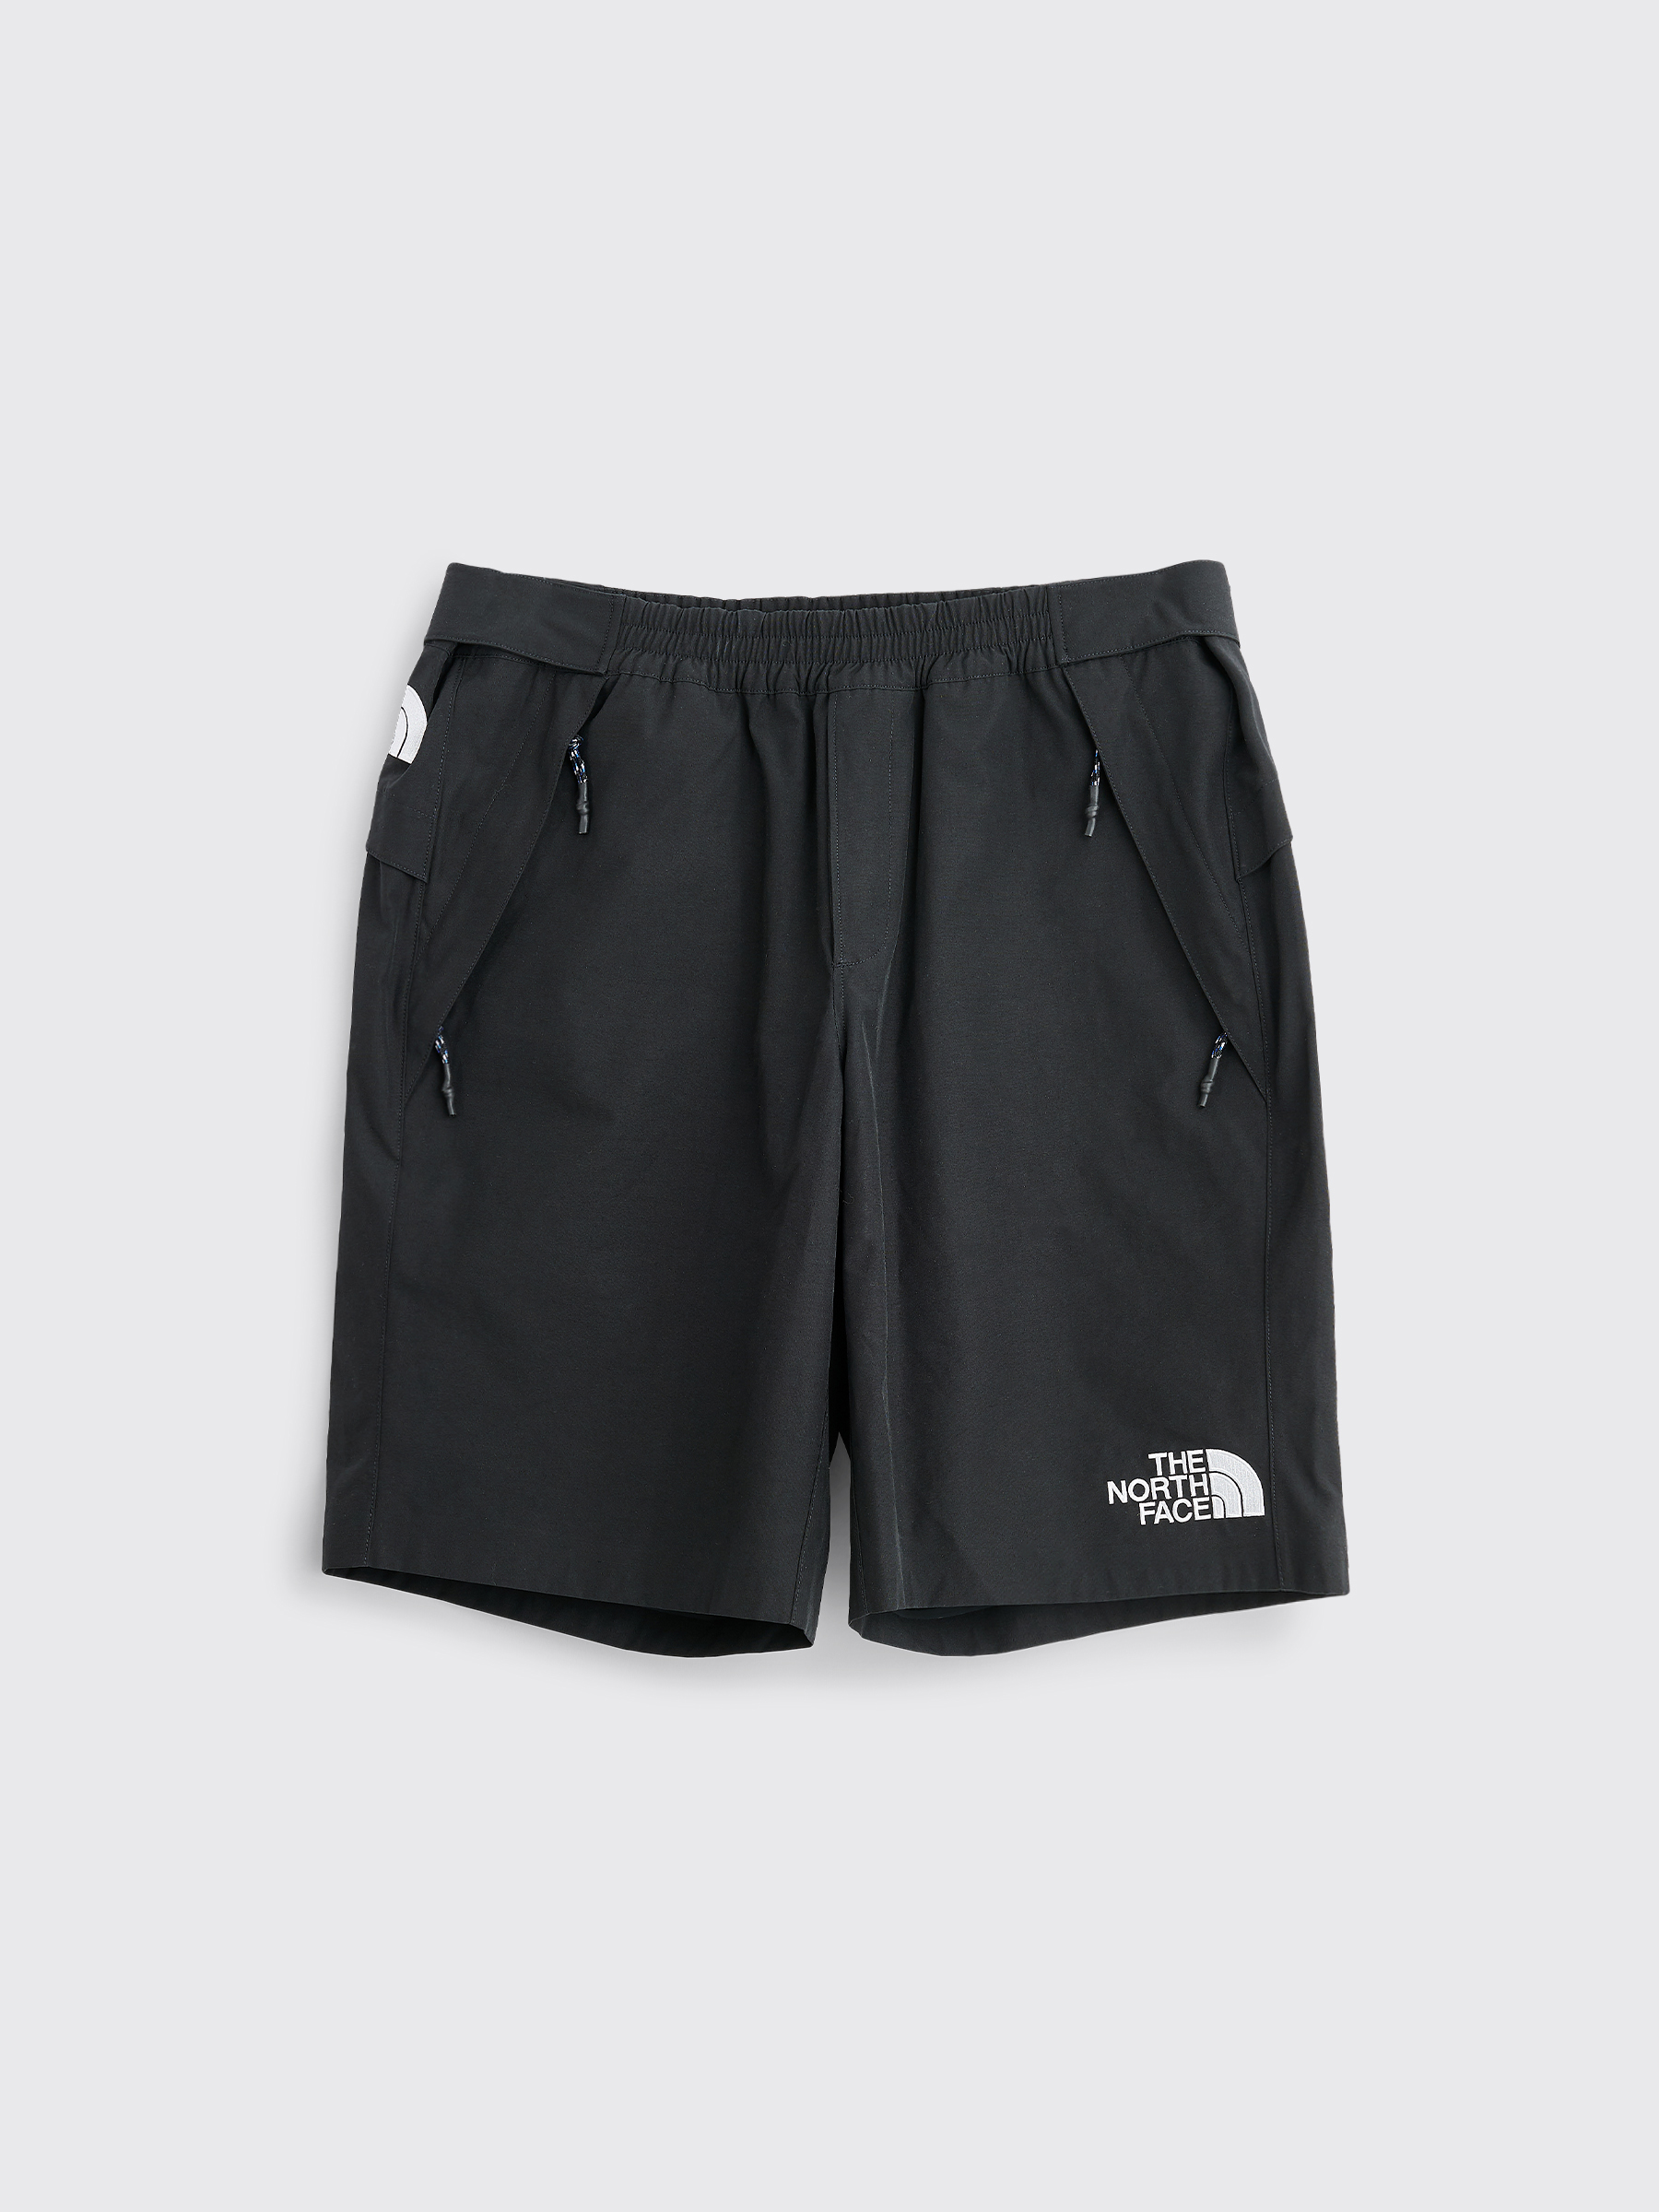 north face zip shorts